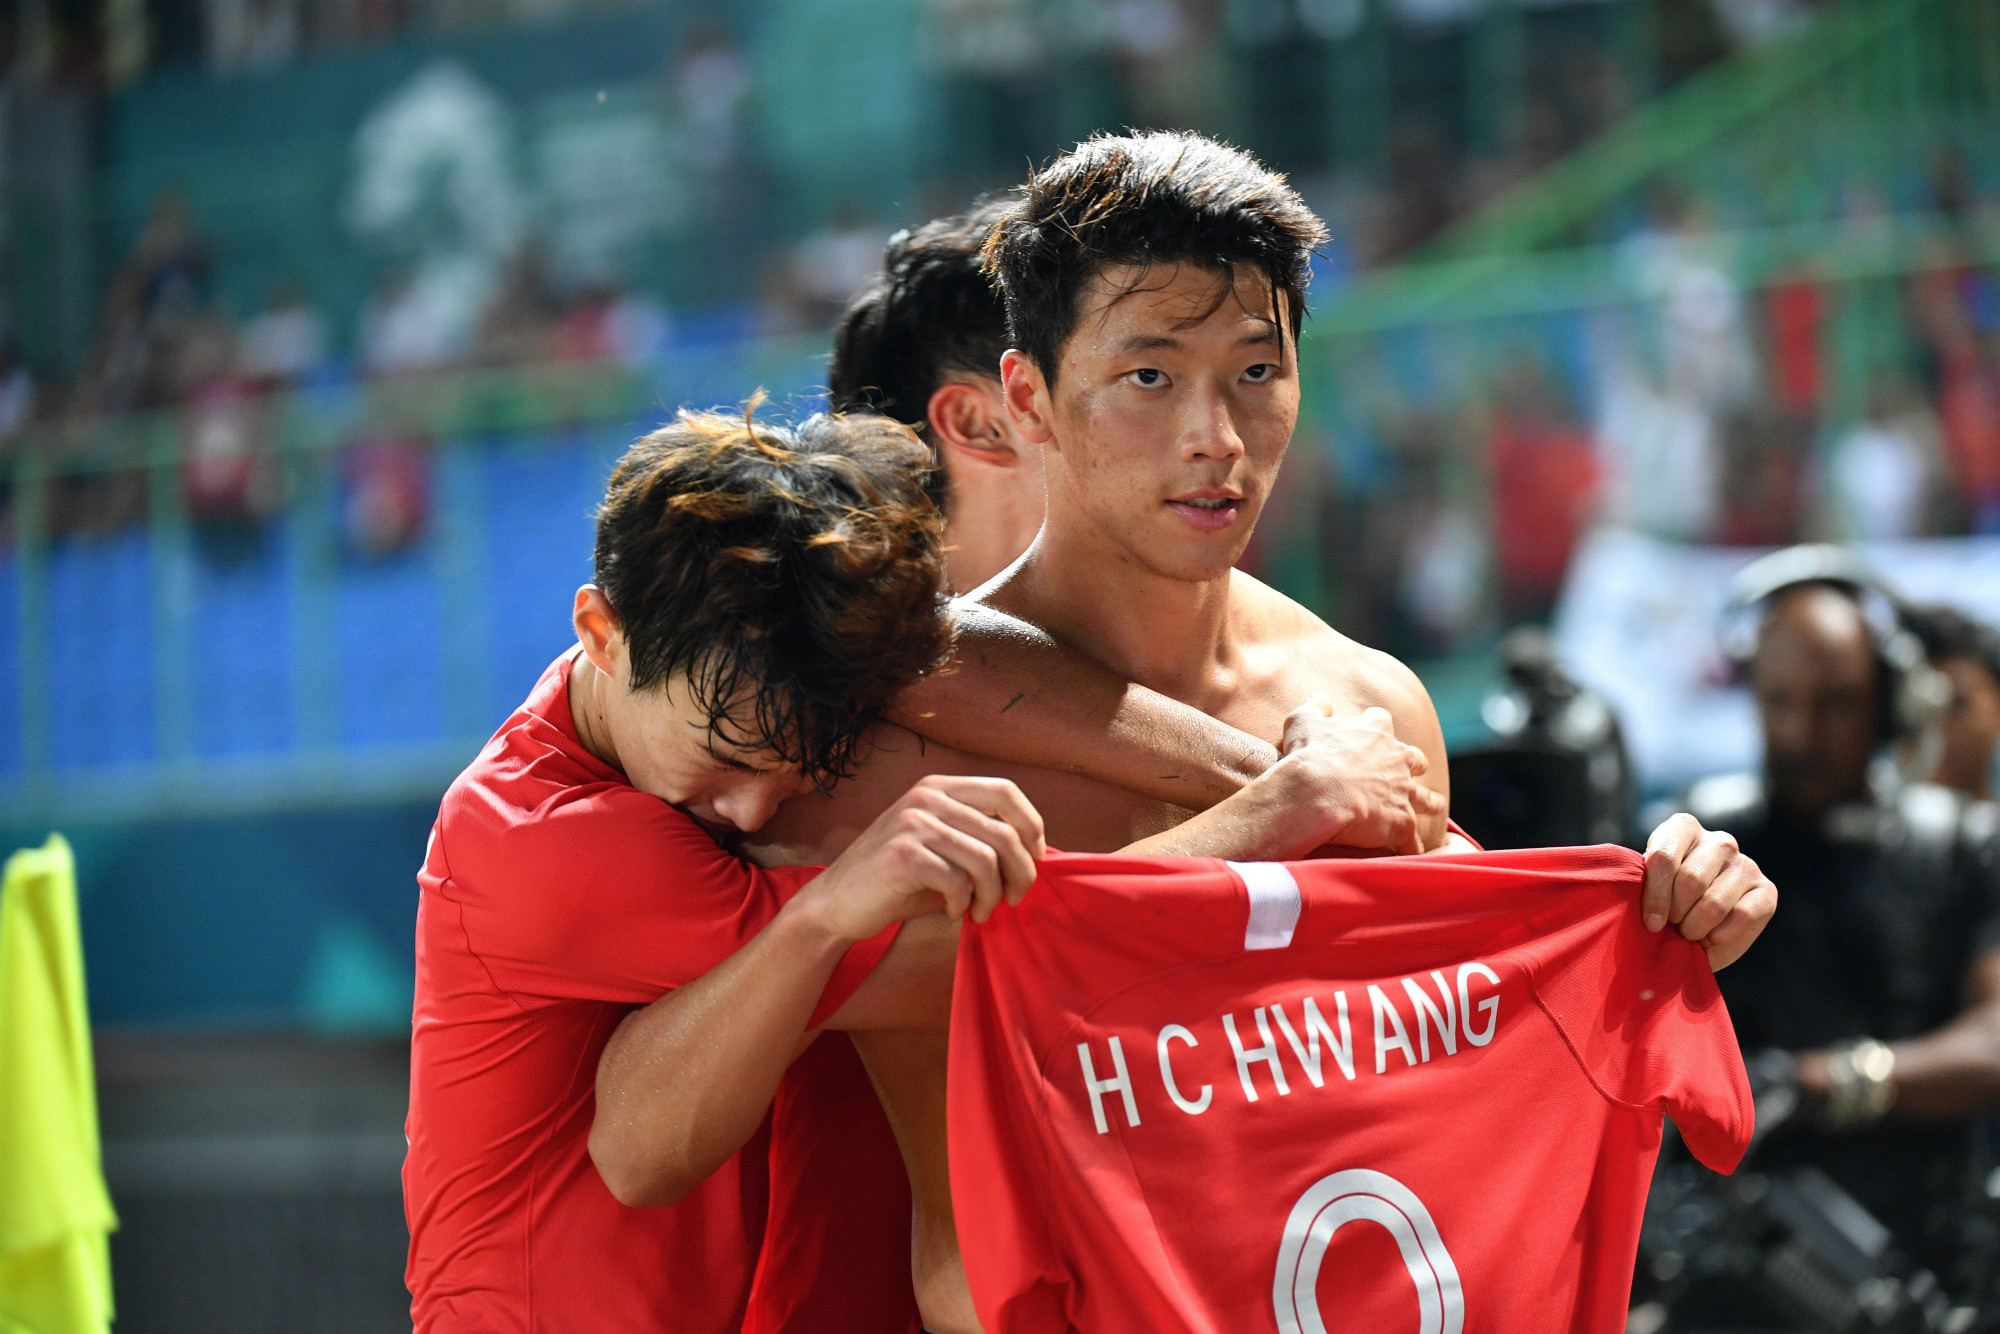 Hwang celebrates at the Asian Games